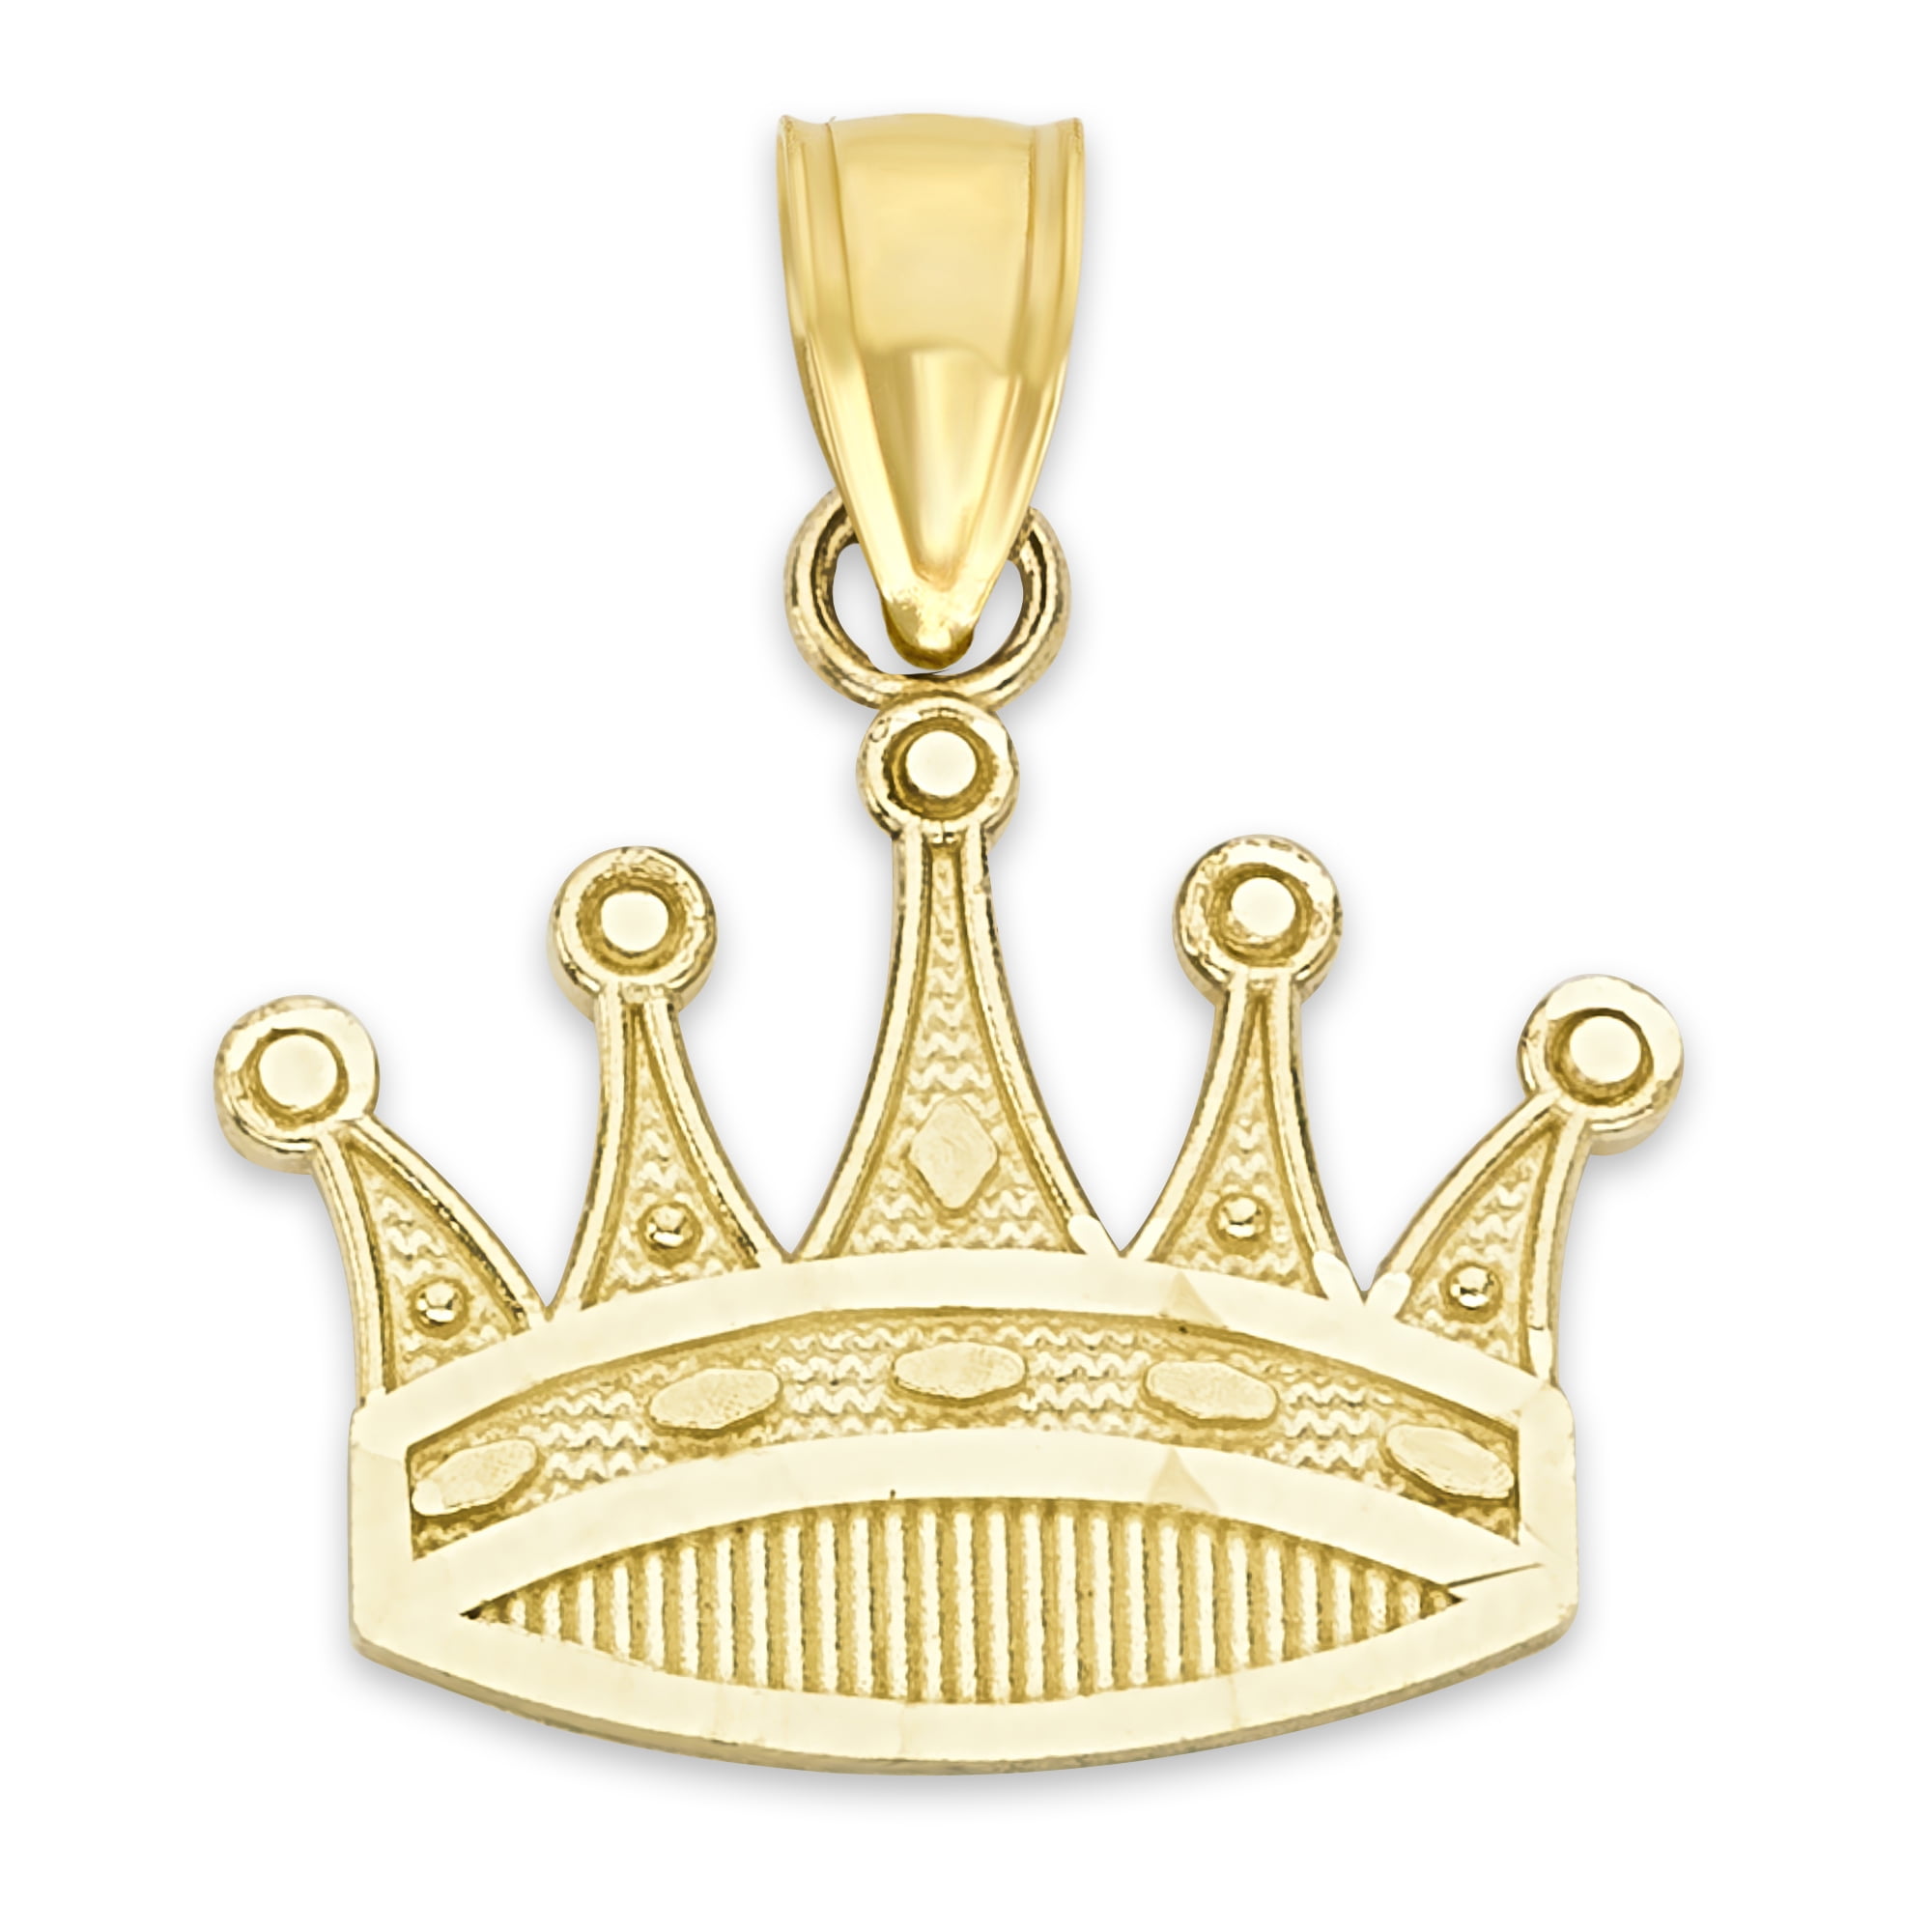 201144円 毎日続々入荷 Diamond Crown Pendant Necklace Handmade - 14k or 18k Genuine Yellow White R